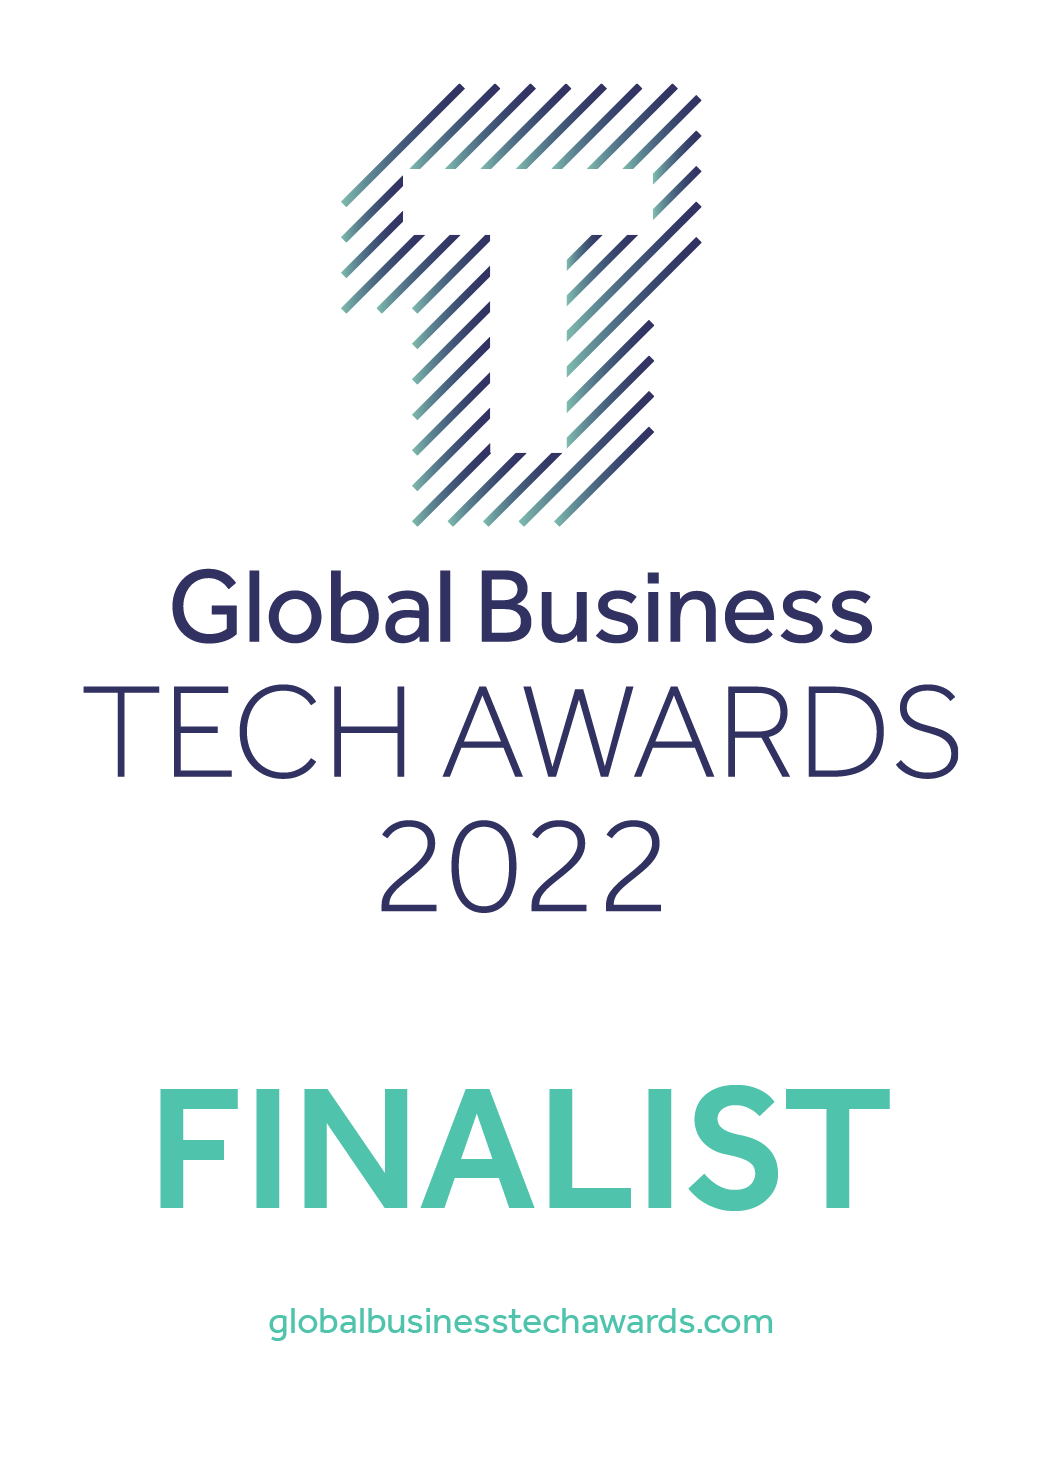 Global Business Tech Awards 2022 Finalist Logo